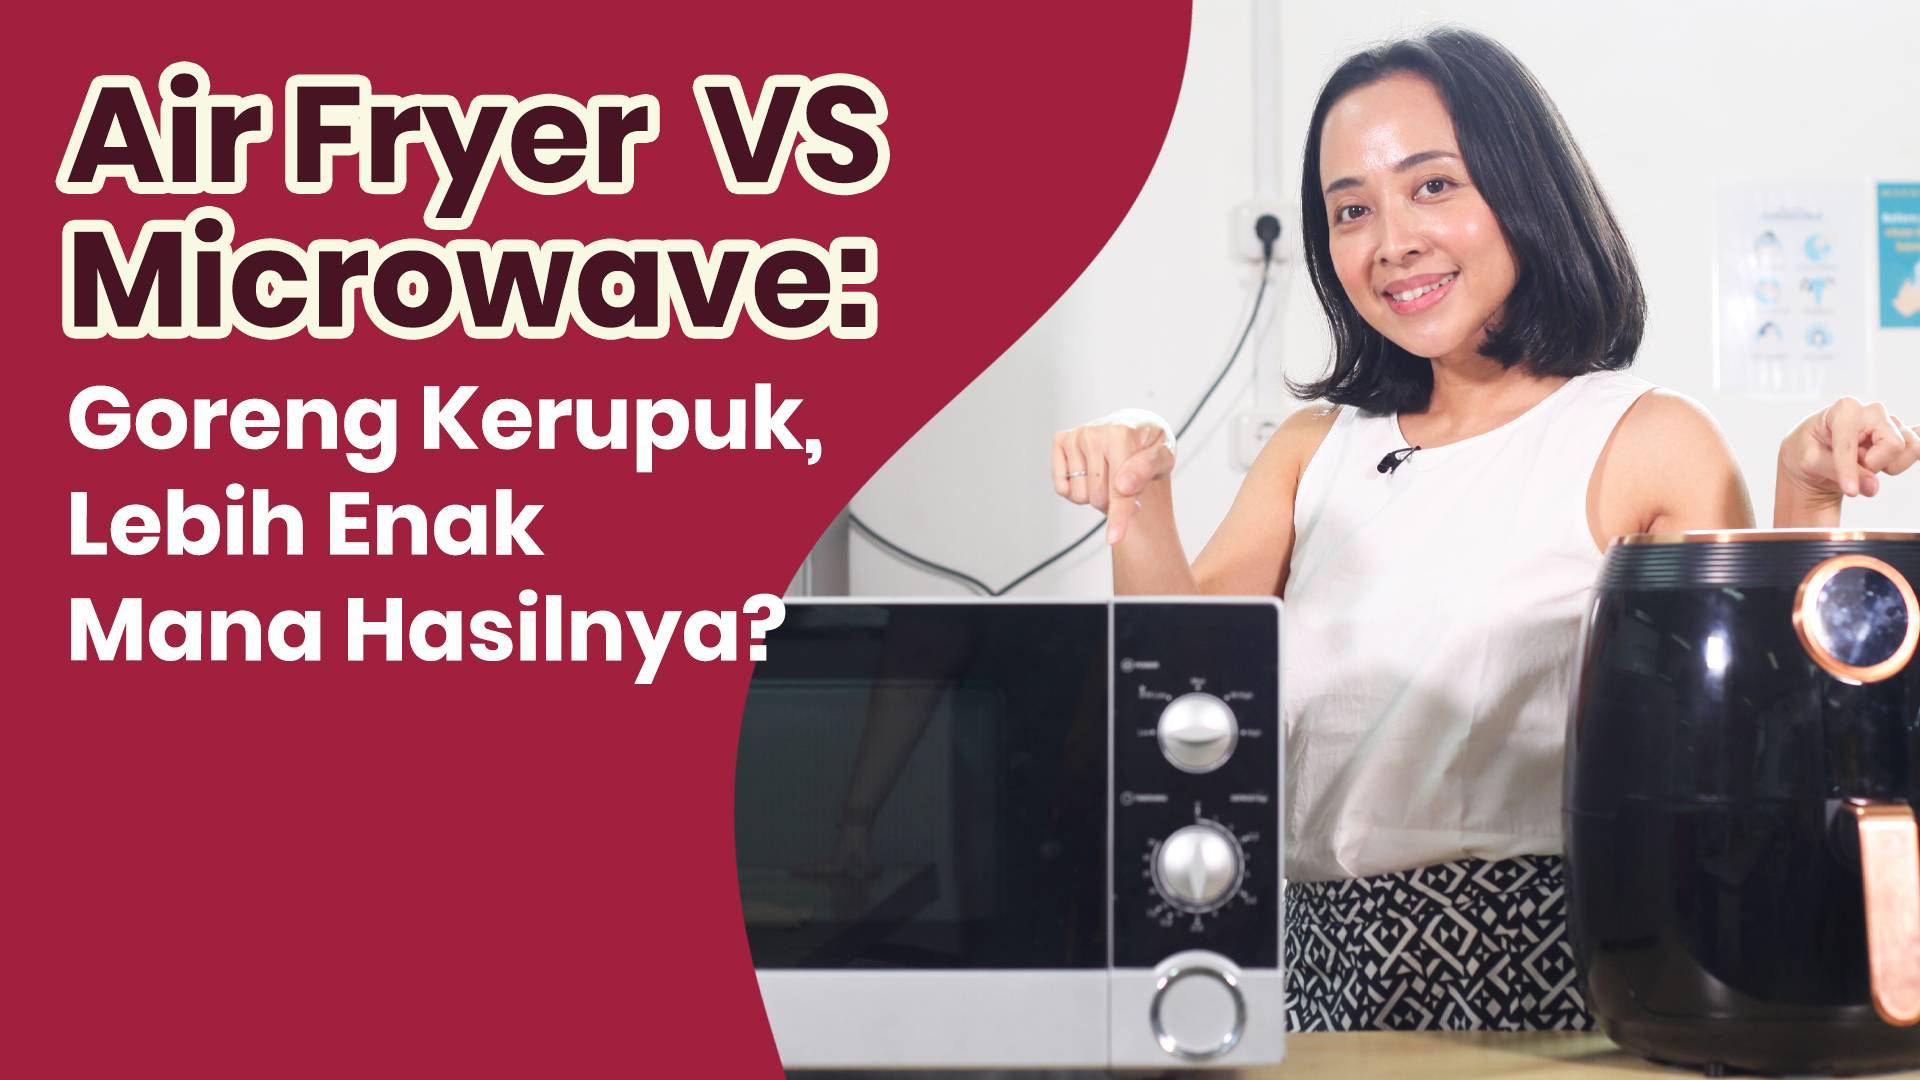 Microwave vs Air Fryer, Mana yang Lebih Enak Untuk Goreng Kerupuk?